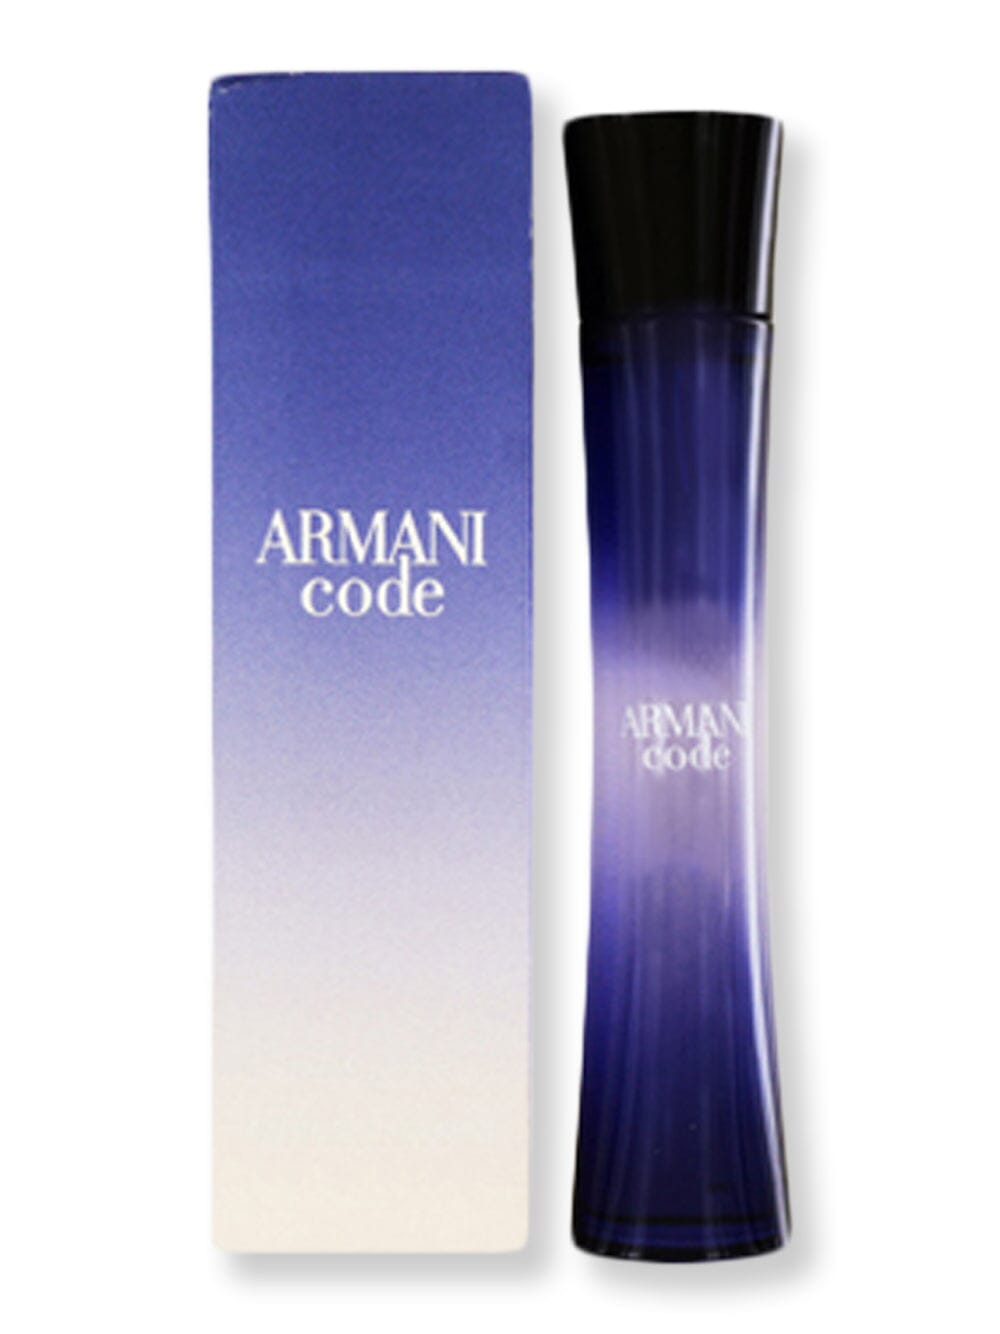 GIORGIO ARMANI GIORGIO ARMANI Armani Code Femme EDP Spray 1.7 oz Perfume 